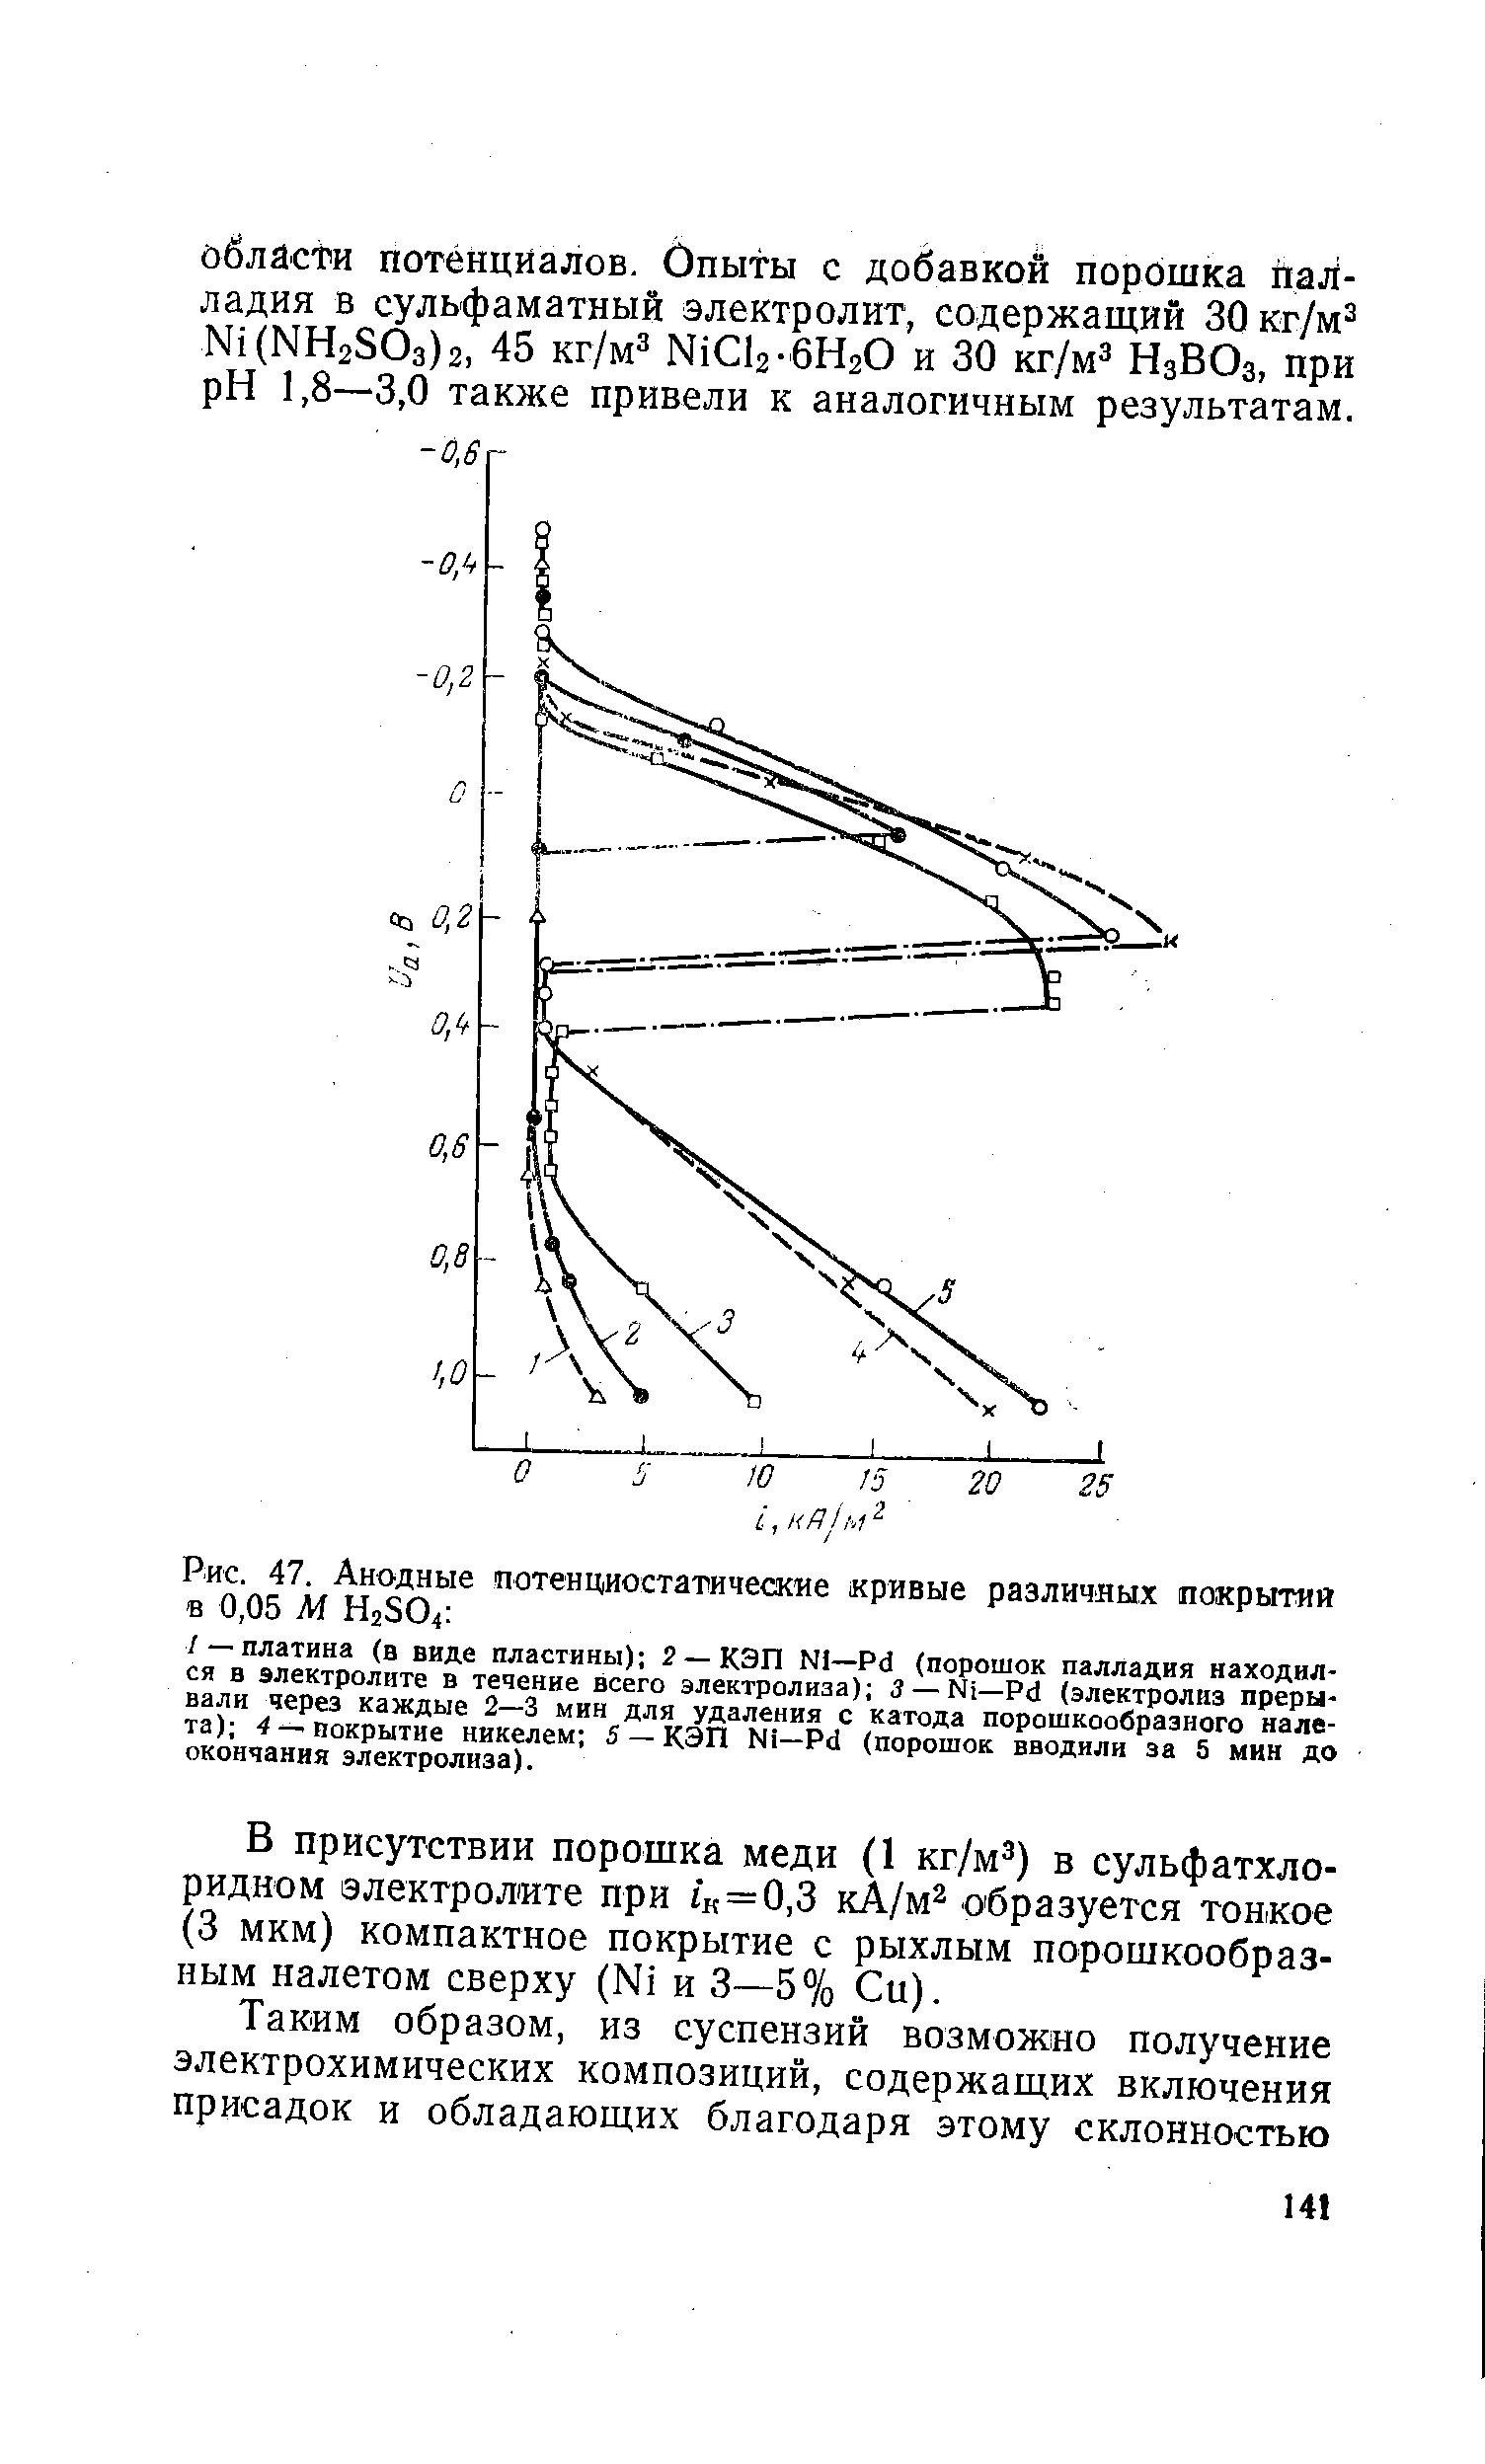 Рис. 47. Анодные потенциостатические кривые различных покрытия в 0,05 М H2SO4 
